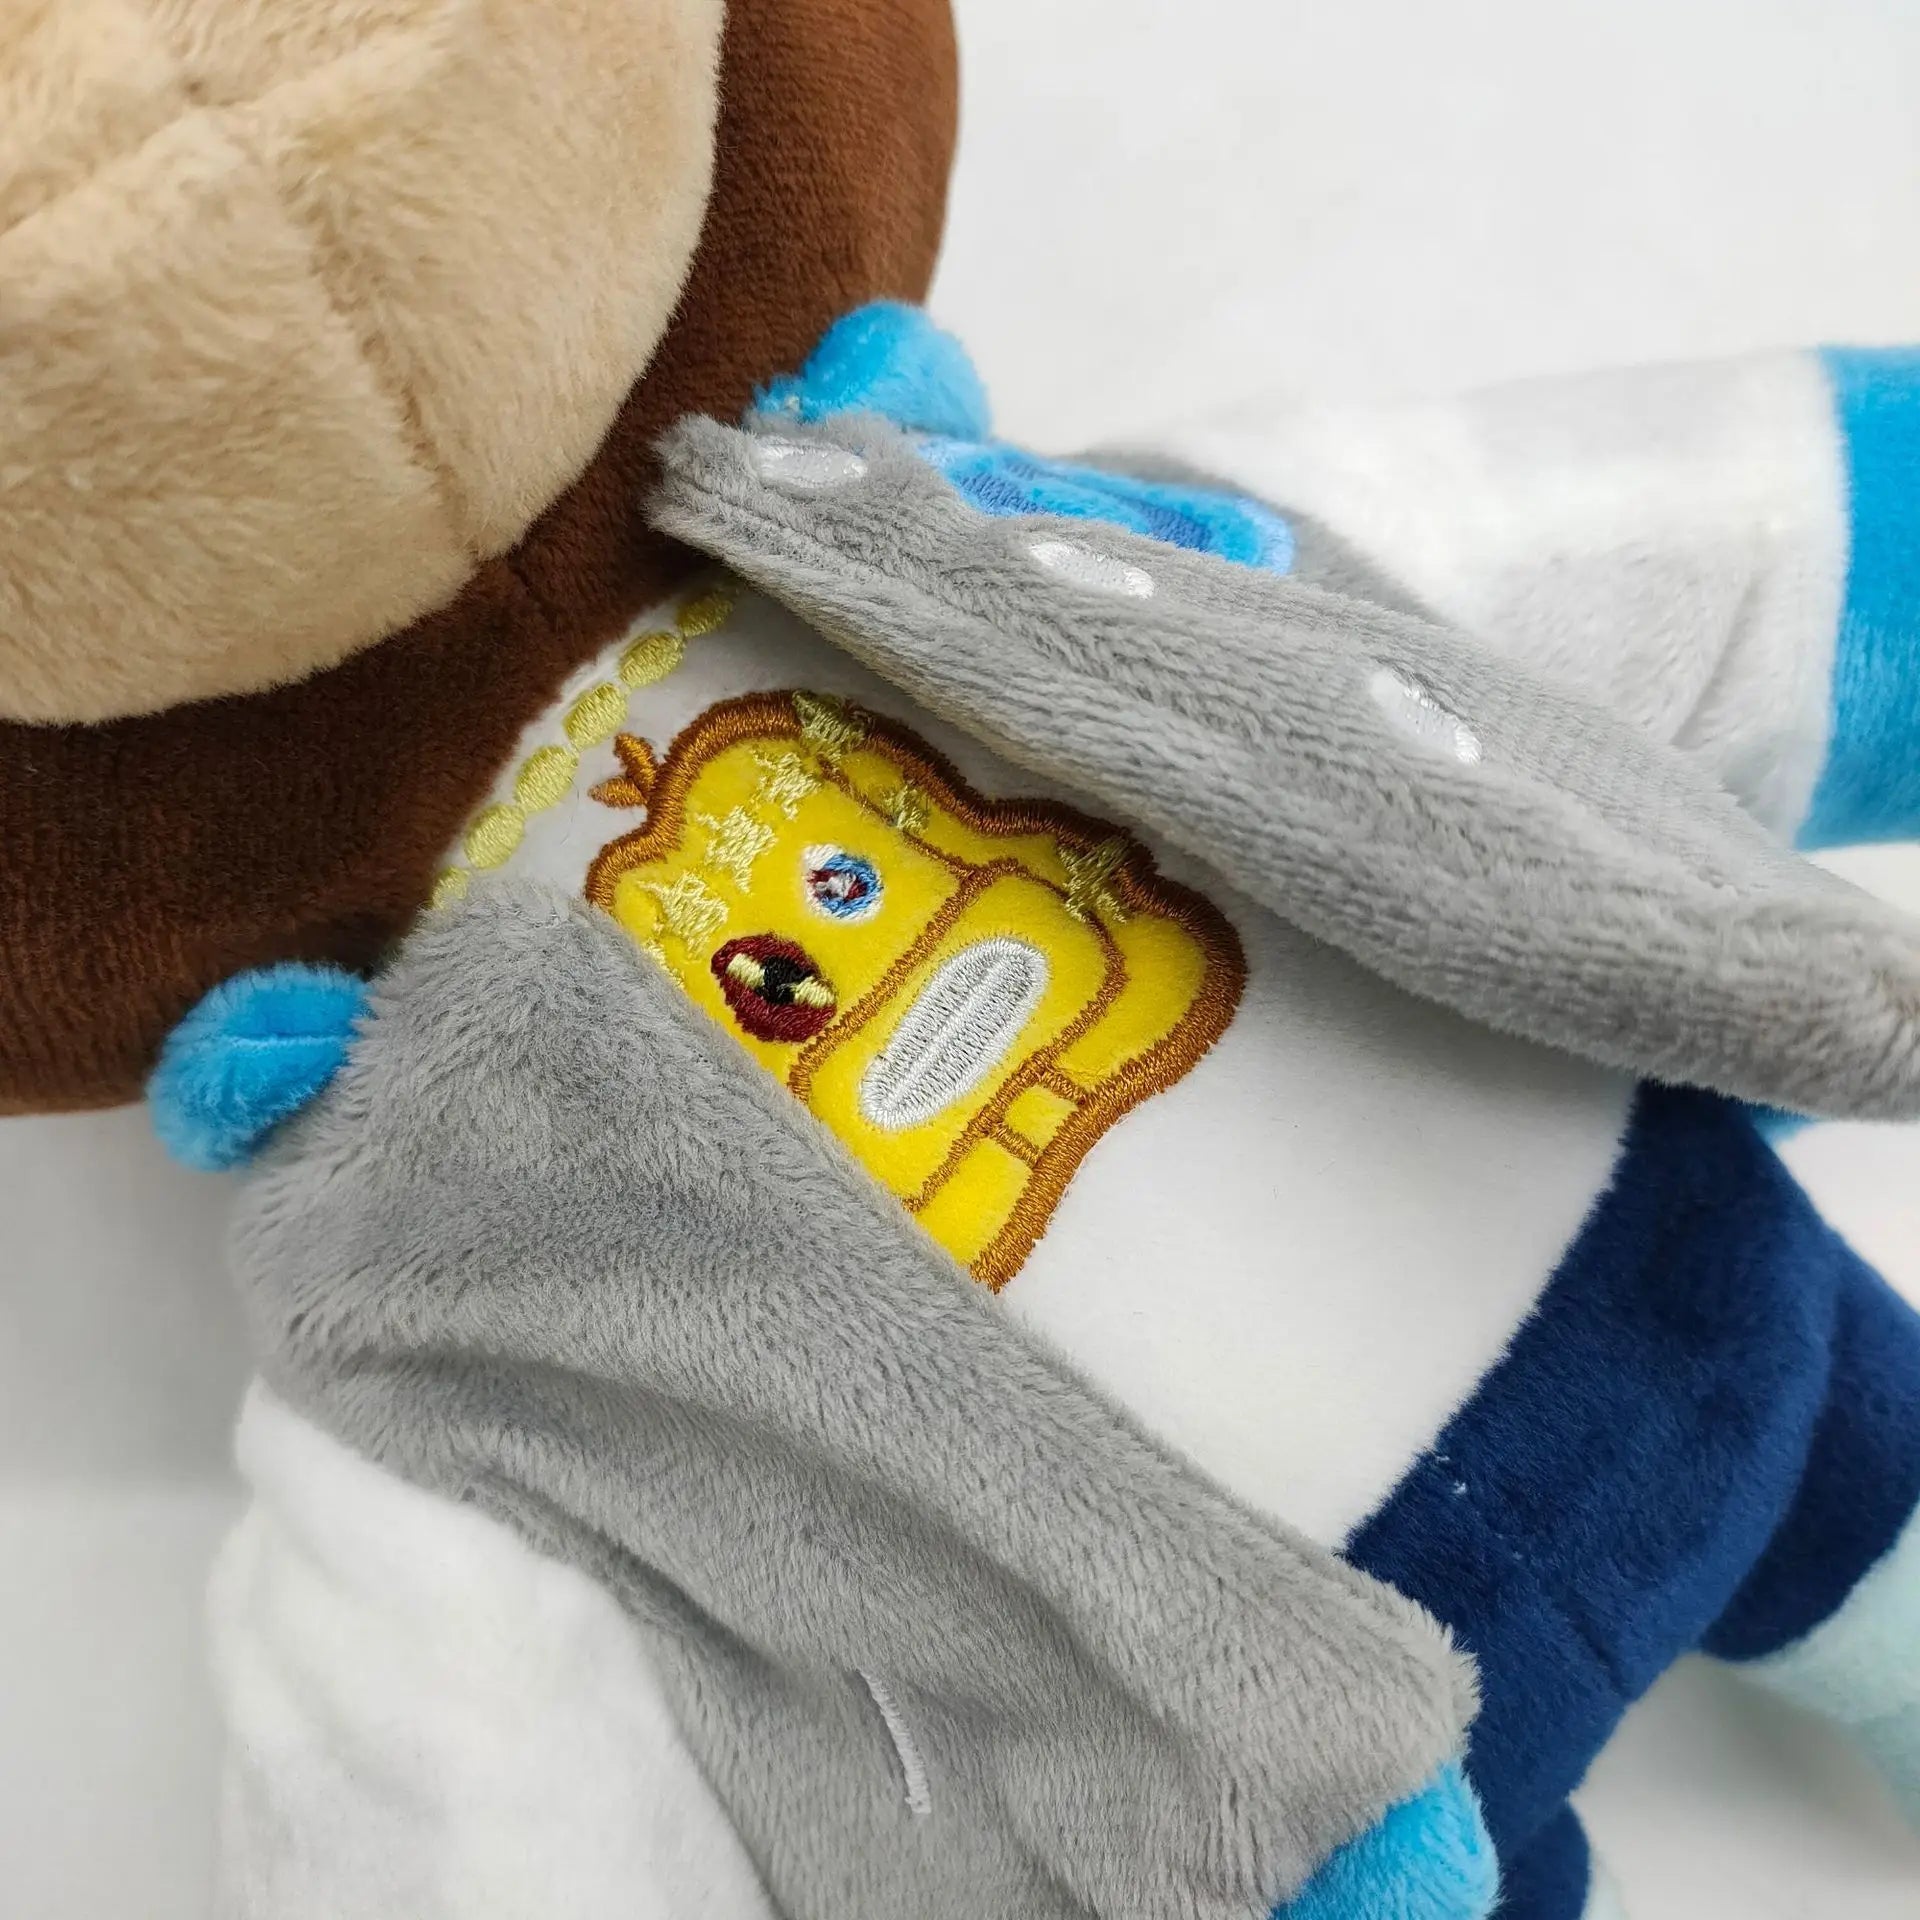 26CM Kanye Teddy Bear Plush Toy  Bear Dolls Stuffed Soft Toy - ToylandEU